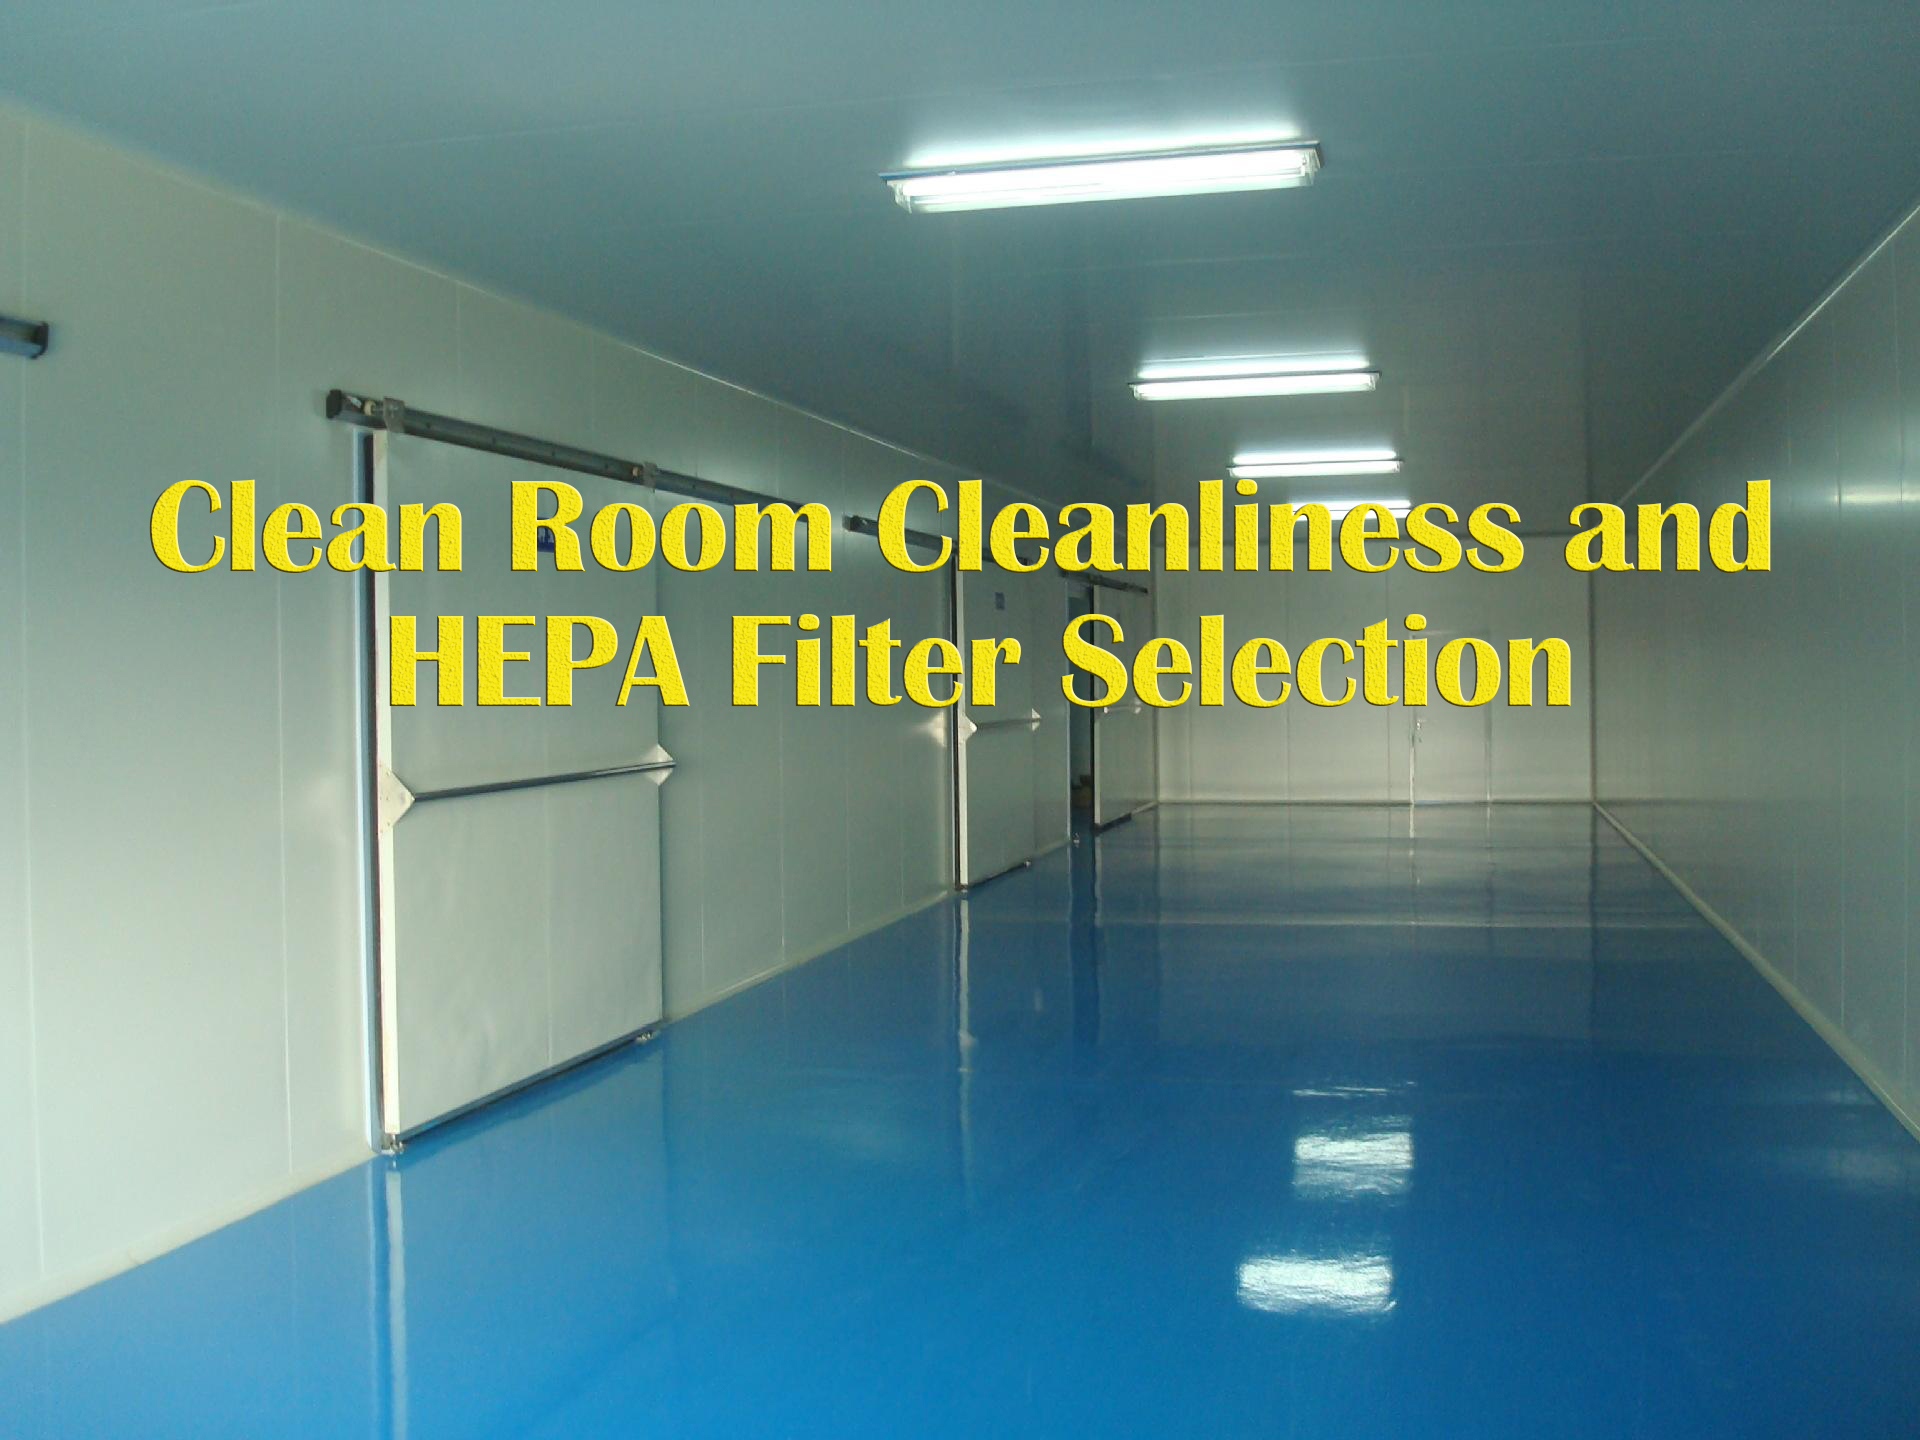 깨끗한 실내 청결 및 HEPA 필터 선택의 오해